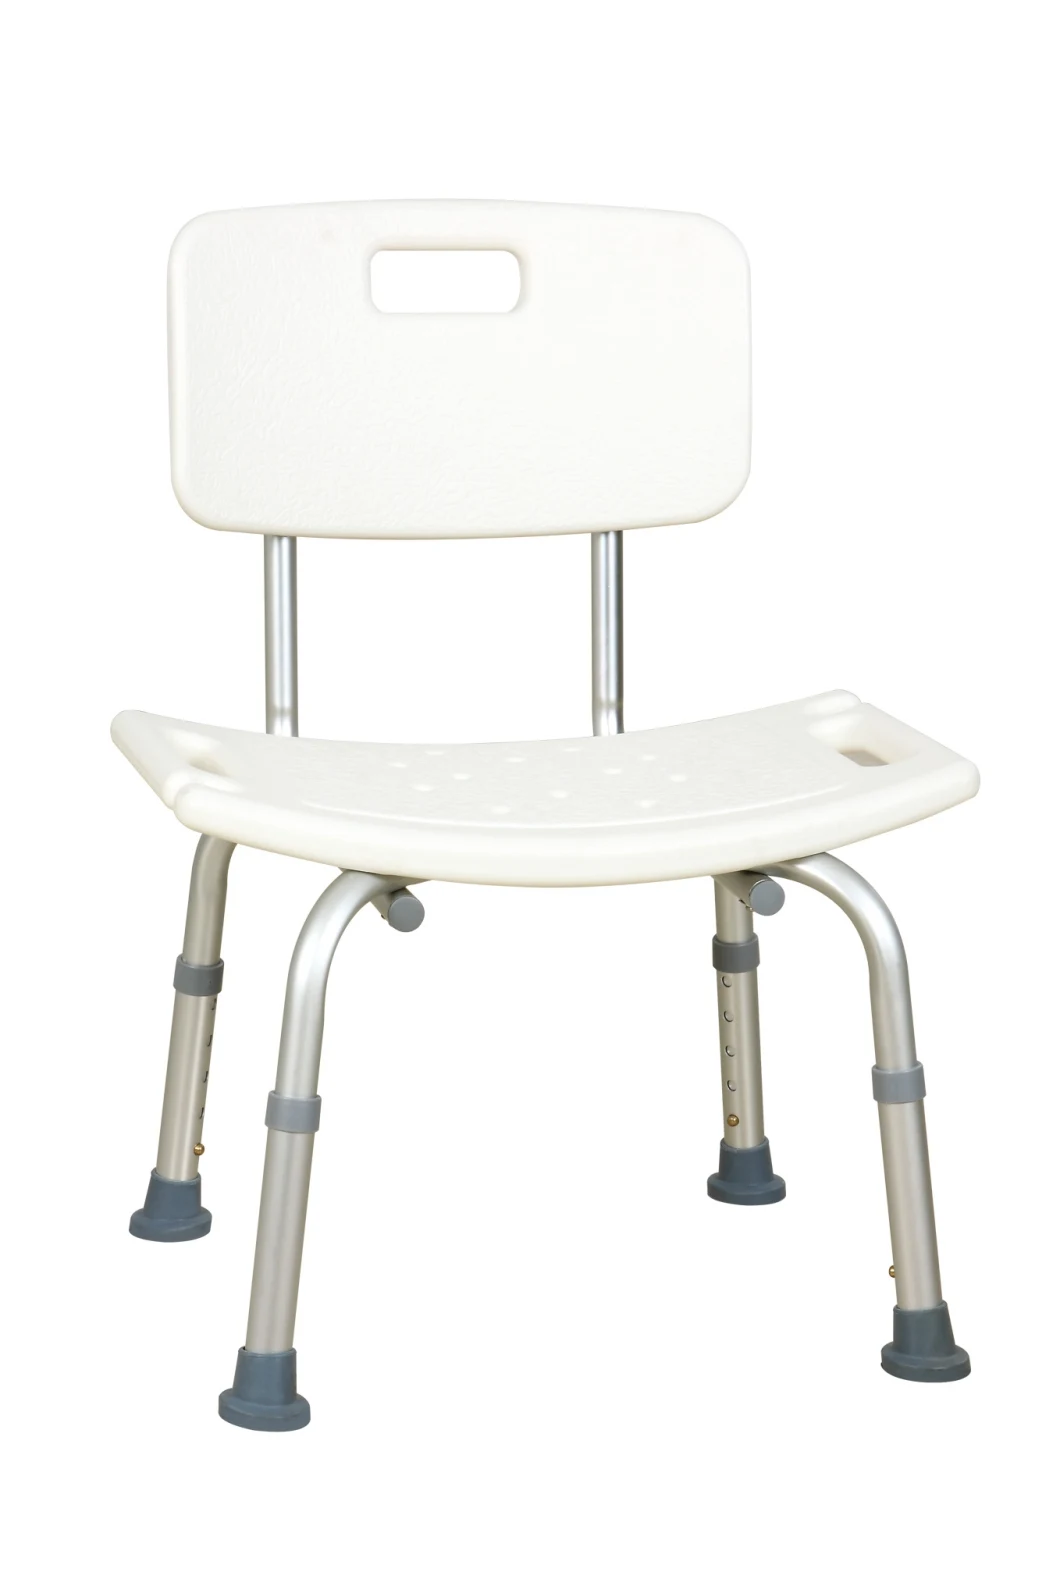 Best Seller Heavy Duty Folding Chairs Lightweight Aluminum Bath Seat Shower Chair Shower Bench